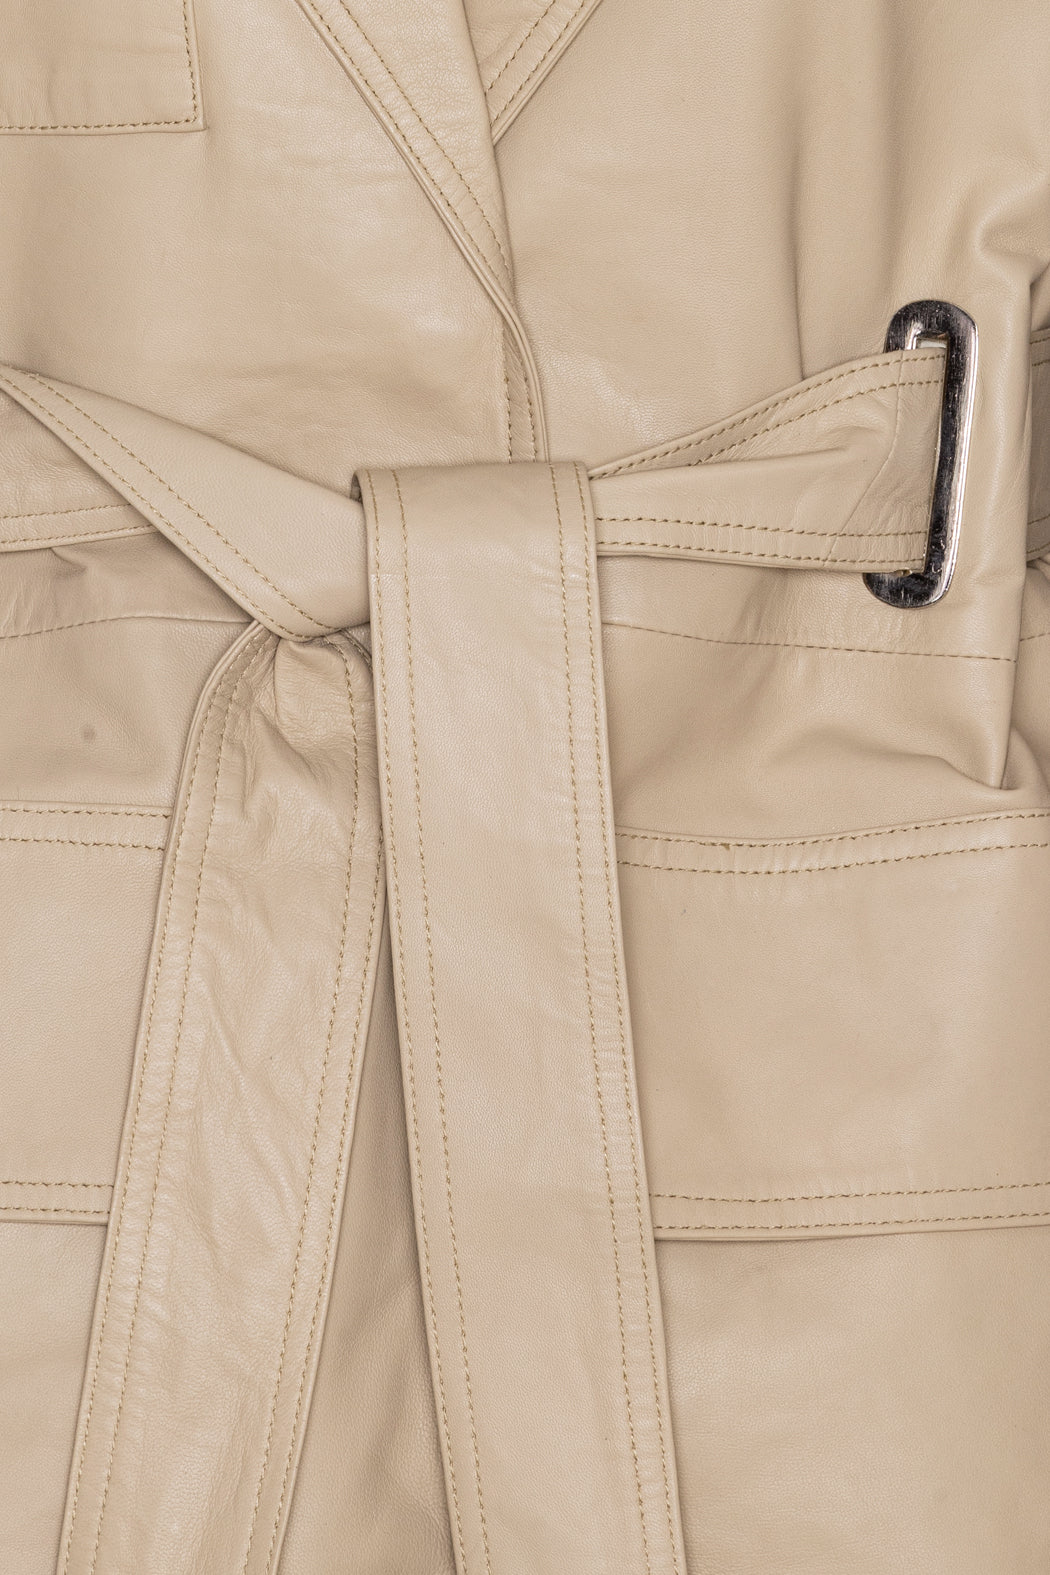 Oversize Leather Jacket